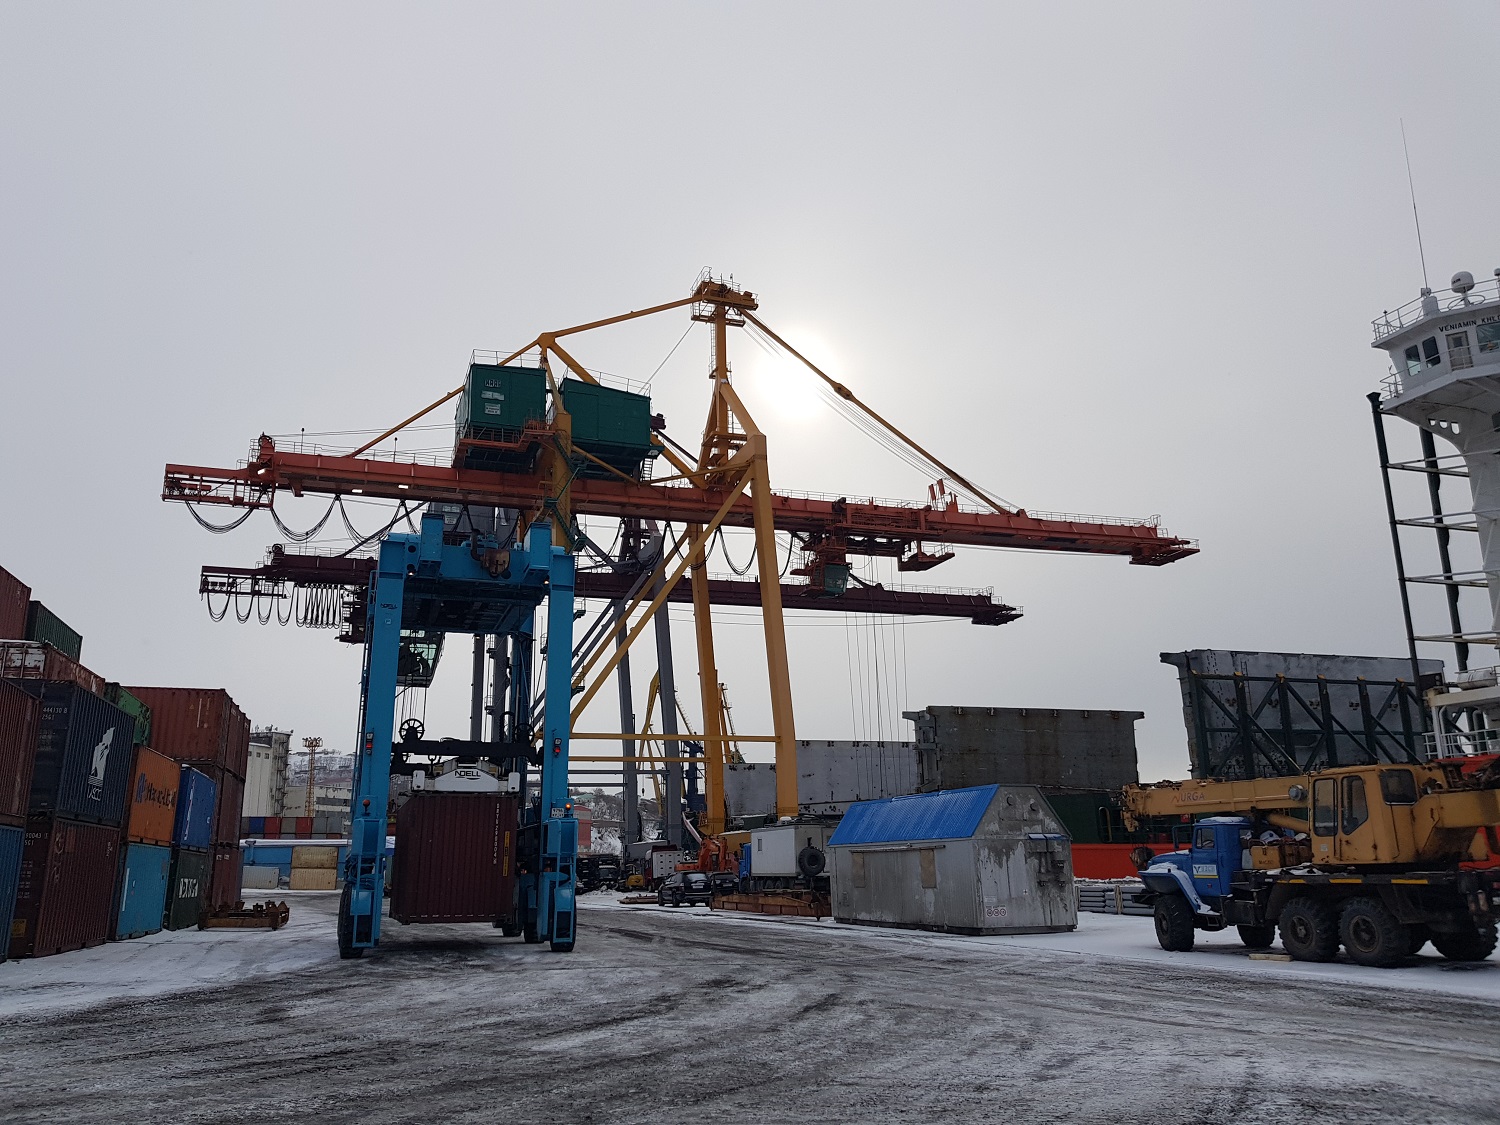 Петропавловск-Камчатский морской торговый порт работает в штатном режиме